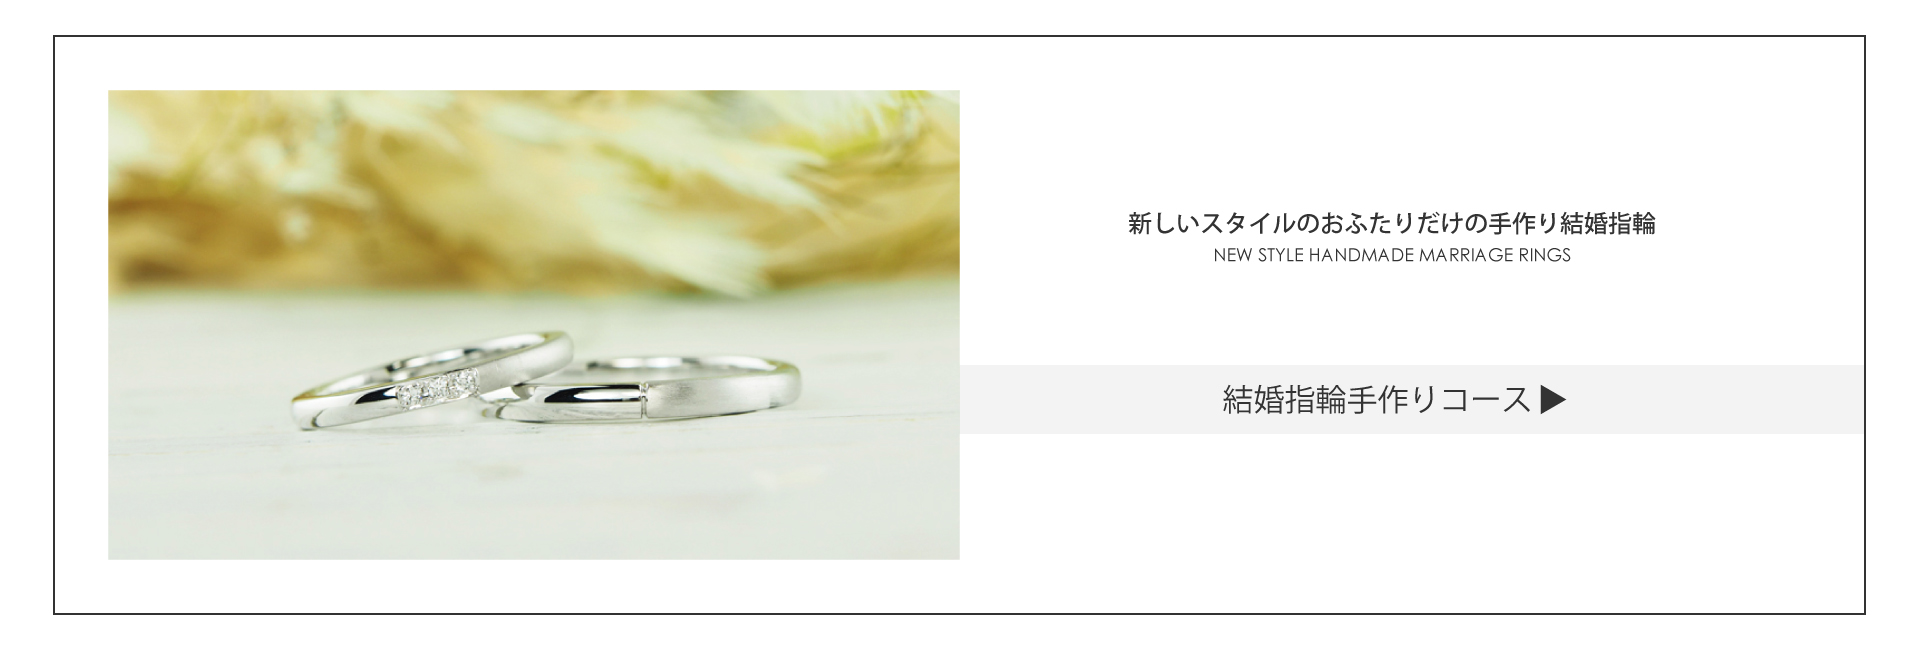 オーダーメイドを手掛けるCHARISᶜᴿ⁸の結婚指輪手作りコースです